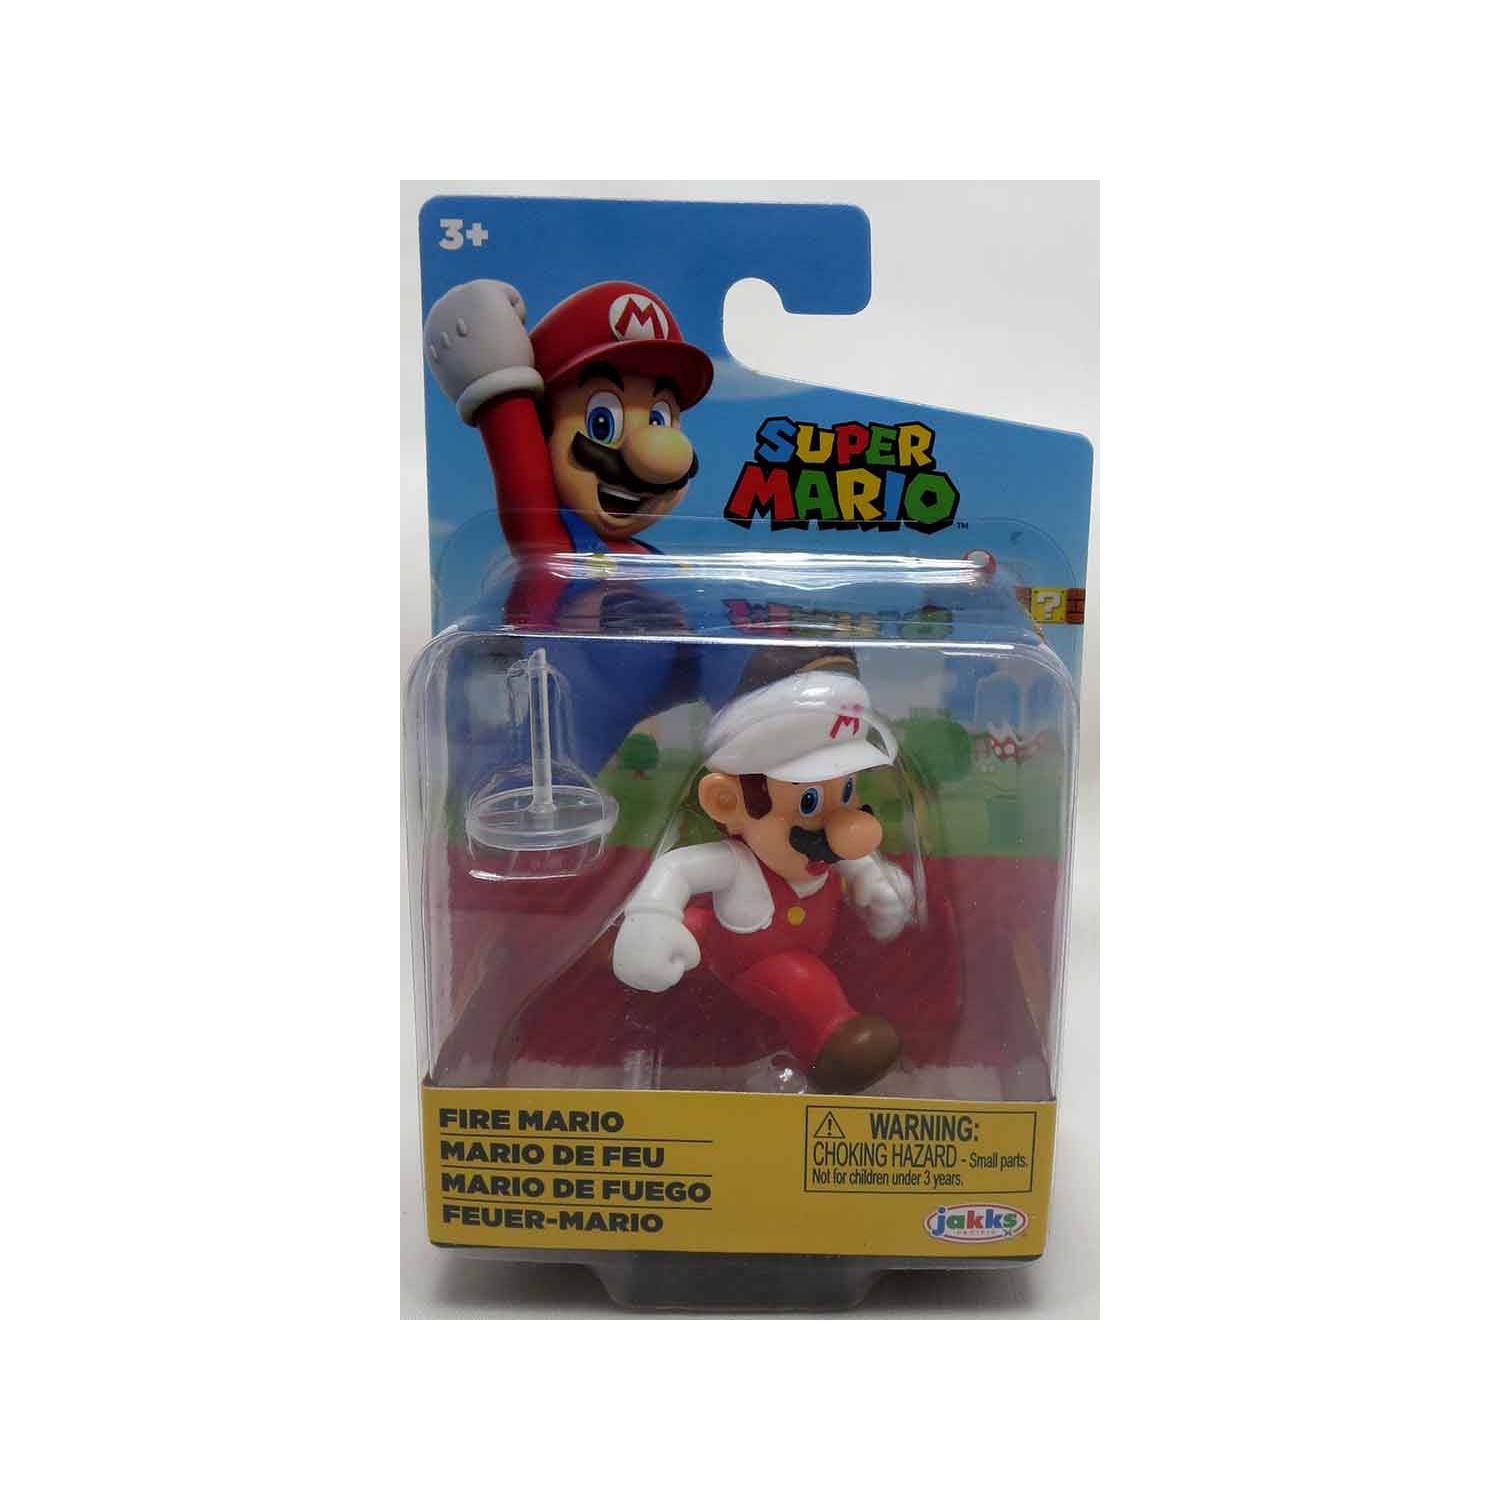 Super Mario World Of Nintendo 2 Inch Mini Figure Wave 39 - Fire Mario